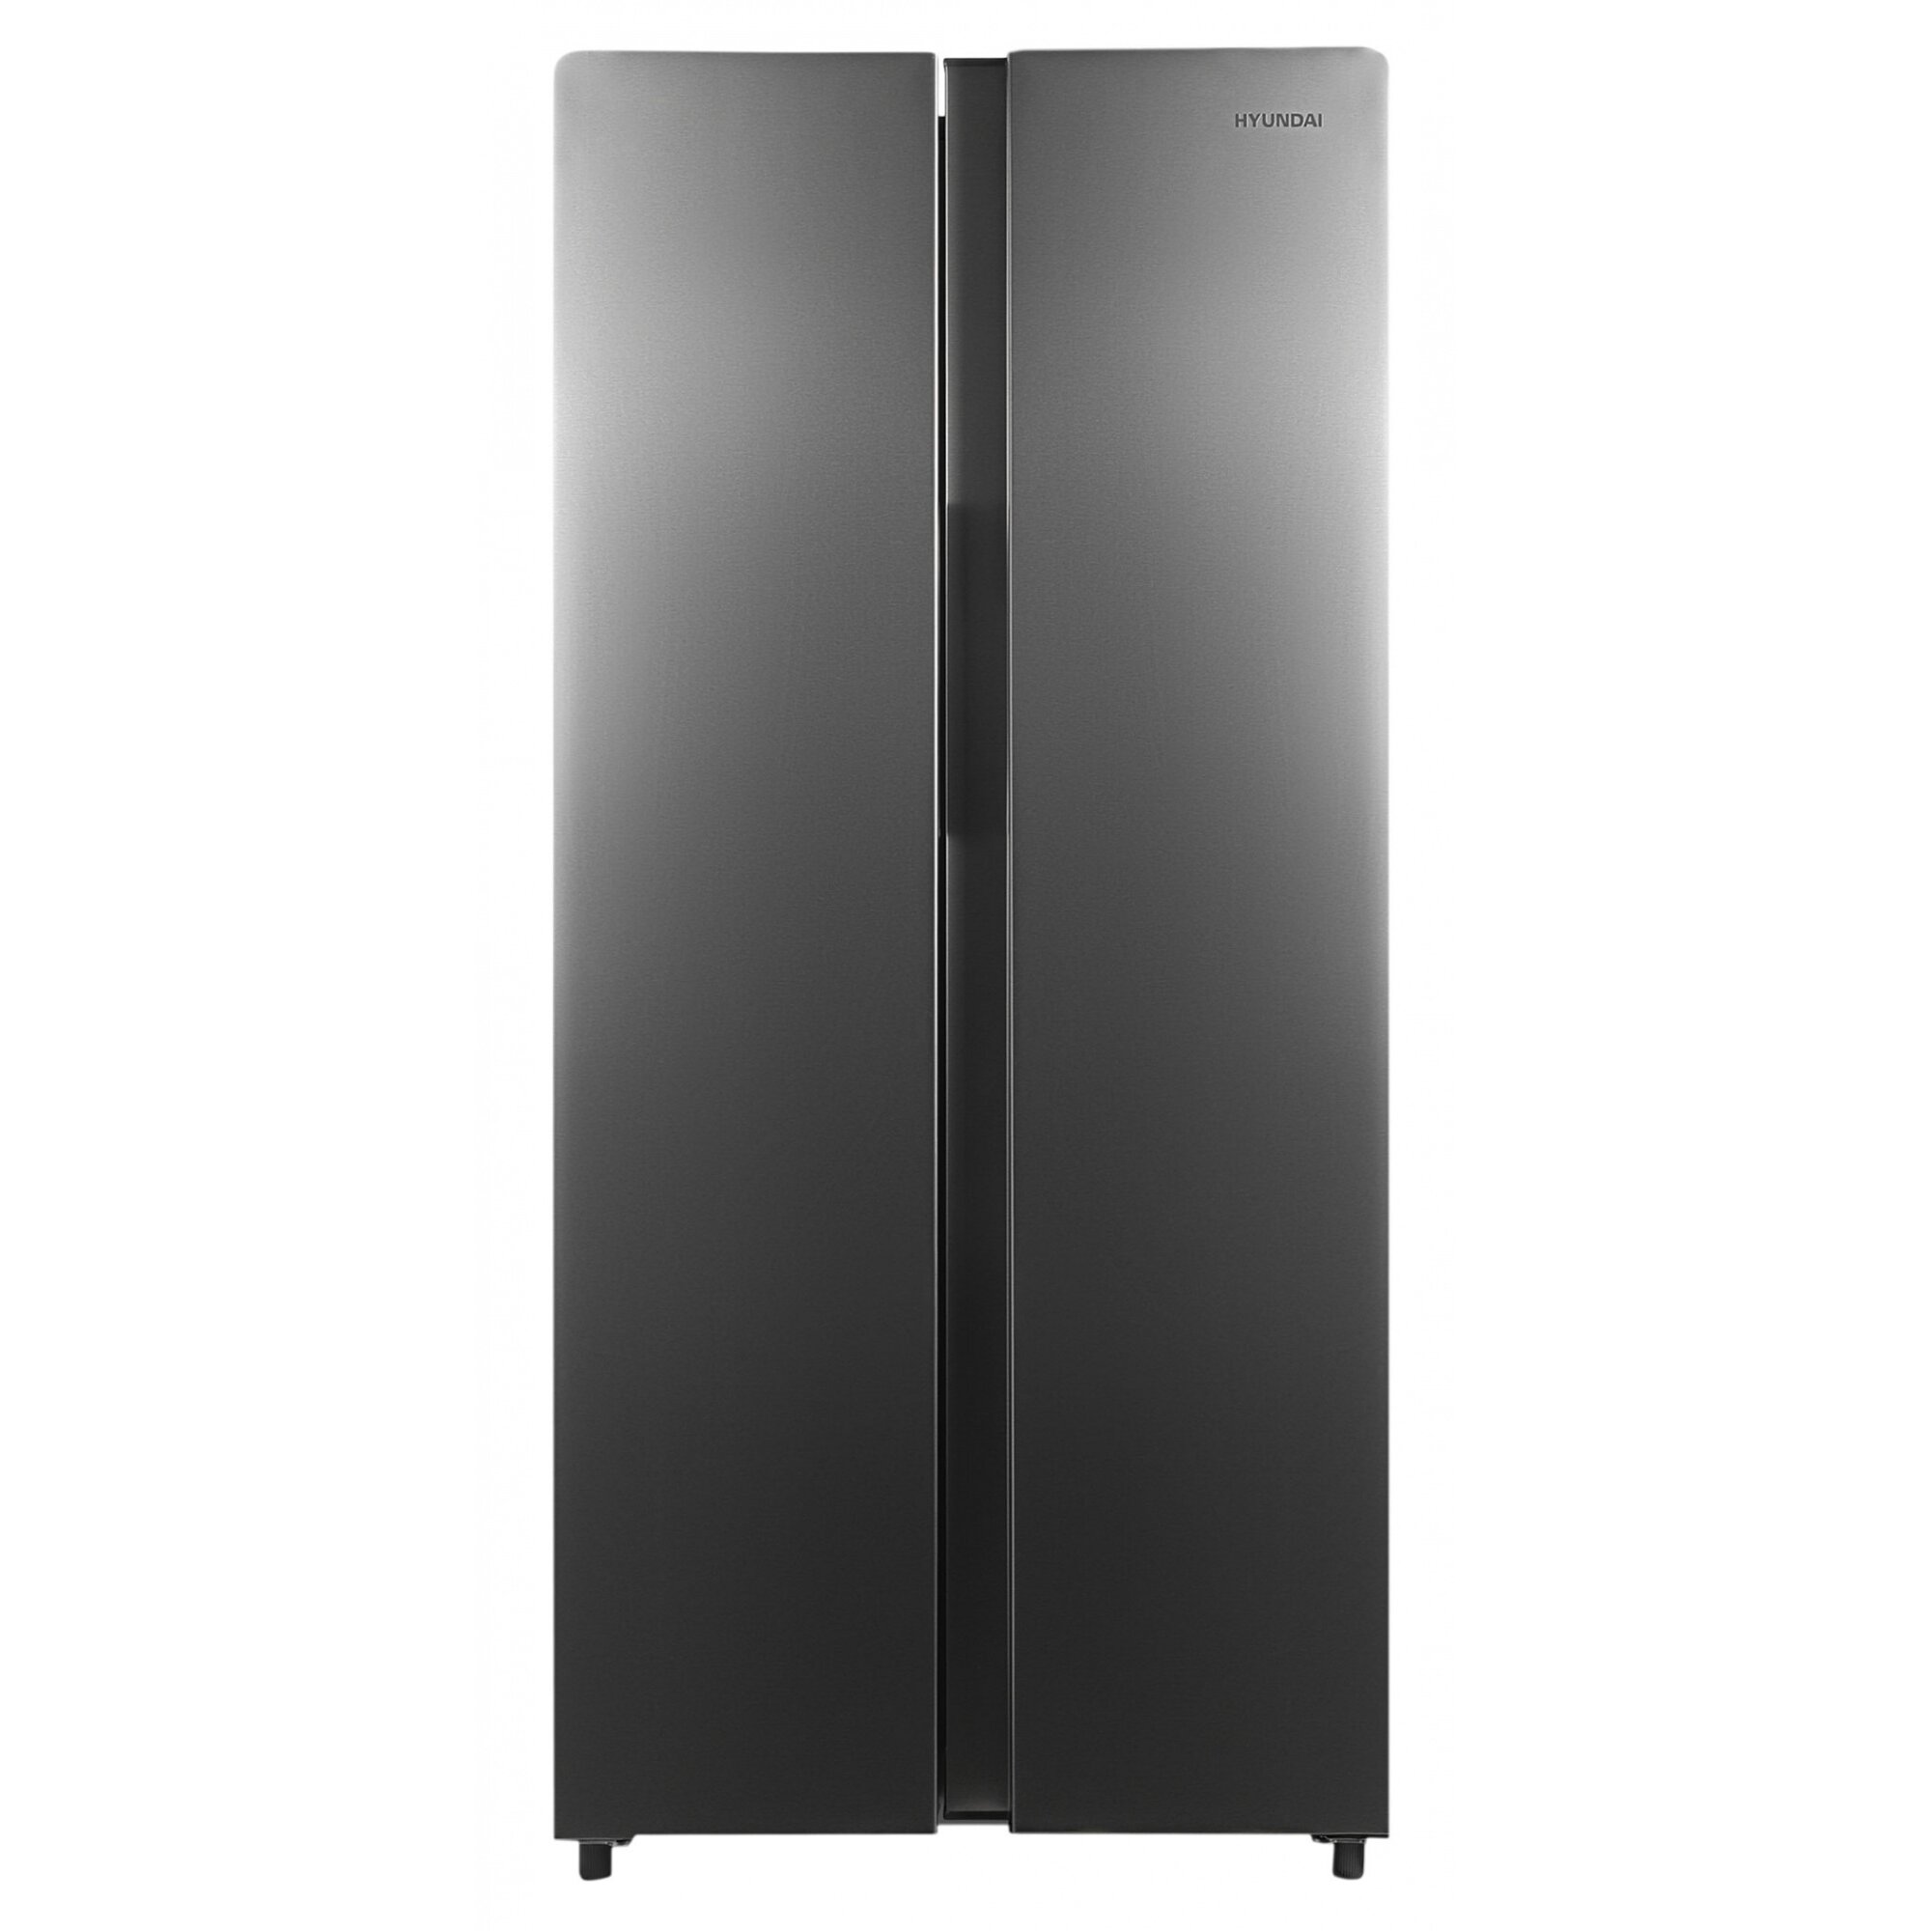 Холодильник hyundai cs6073fv. Холодильник Hyundai cc4023f. Холодильник Hyundai cs6503fv, черный. Холодильник Hyundai cc3593fix. Холодильник Hyundai cc3095fix нержавеющая сталь.